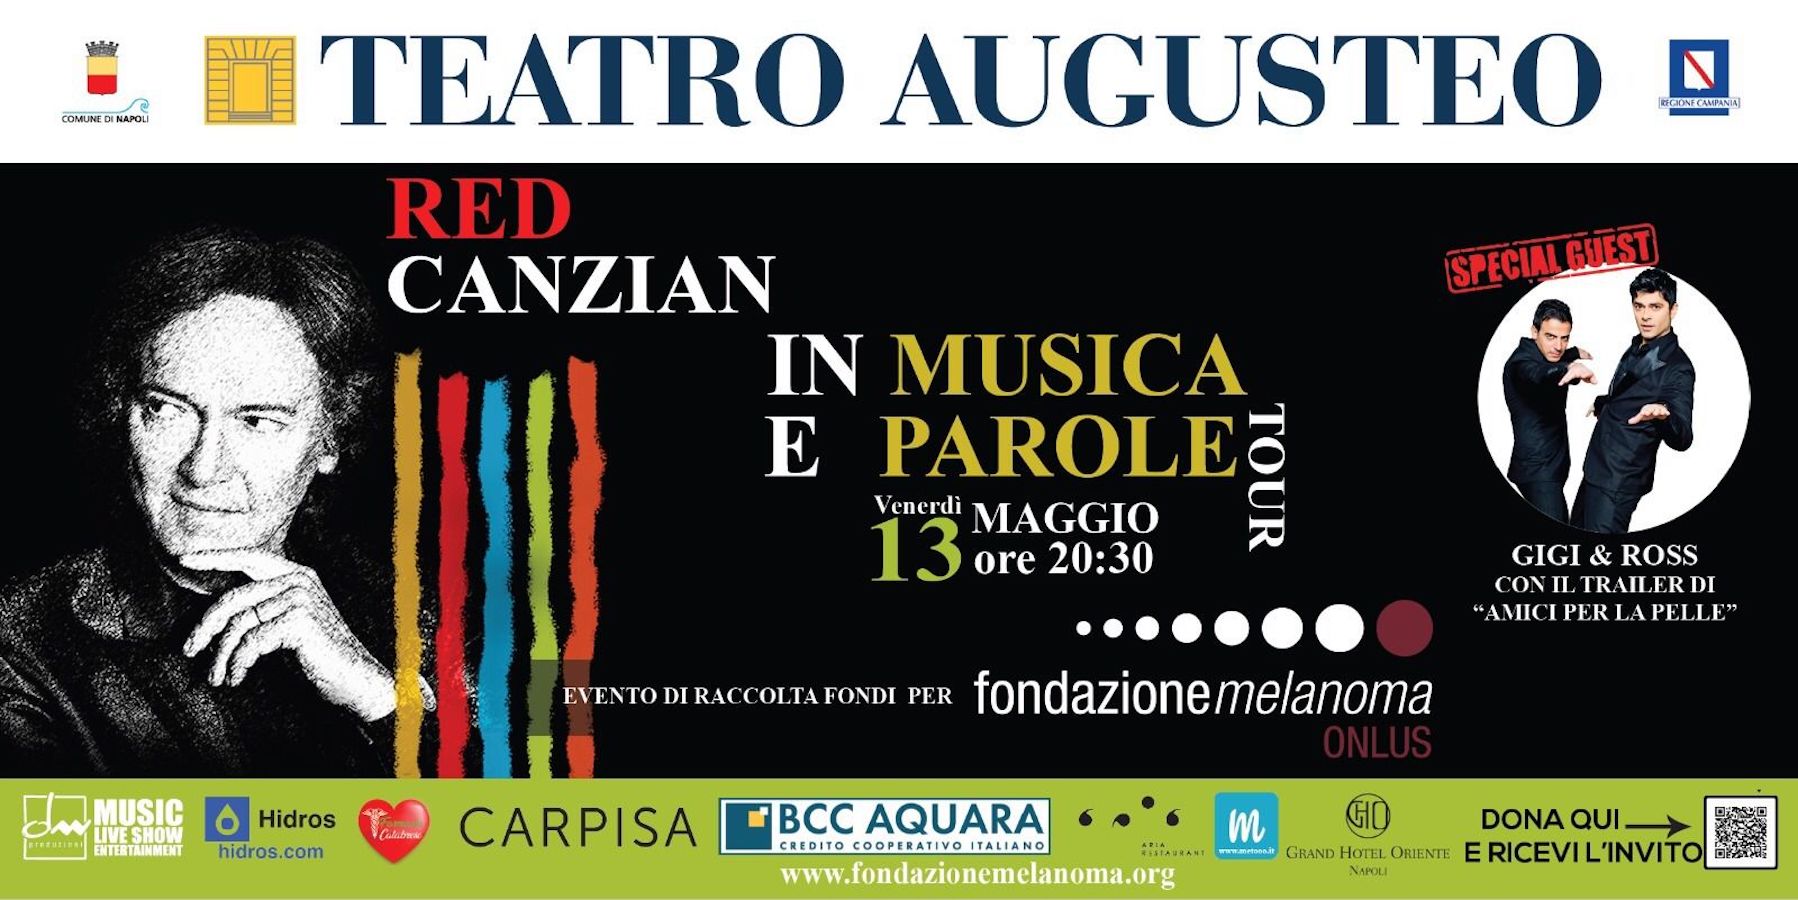 TEATRO AUGUSTEO | Red Canzian in concerto per la ricerca oncologica